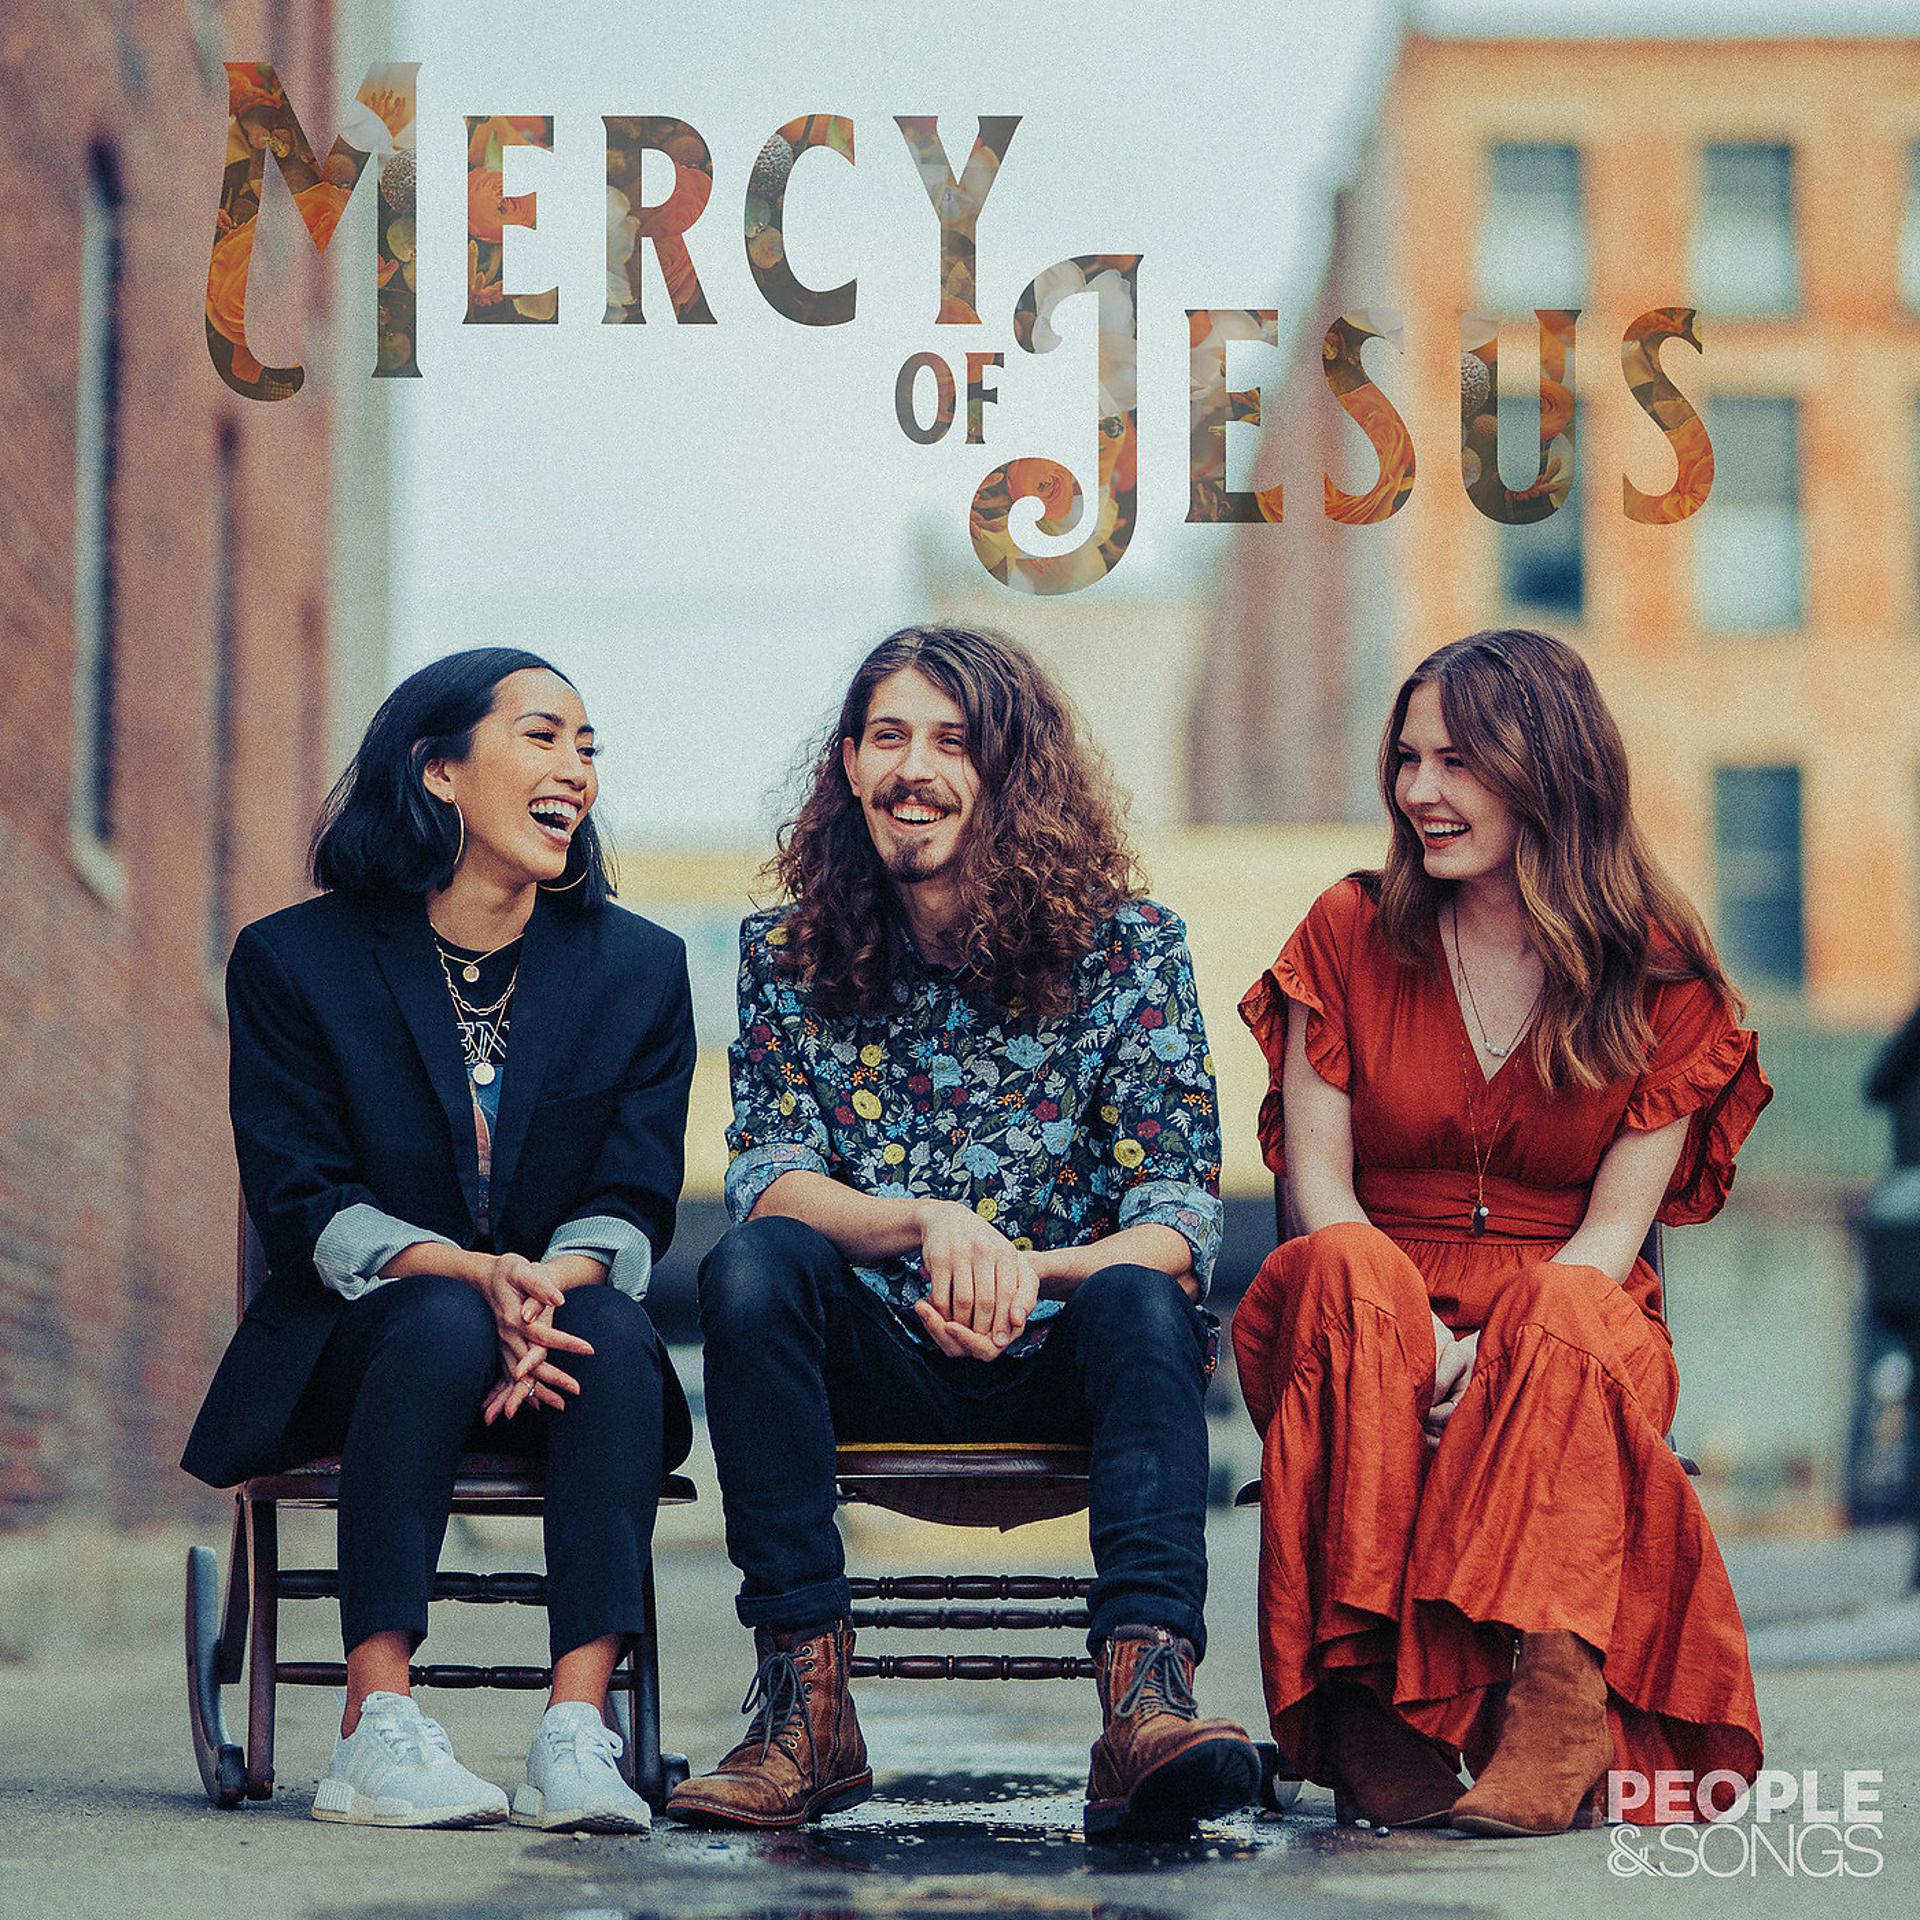 Постер к треку People & Songs, Mary Grace - Mercy of Jesus